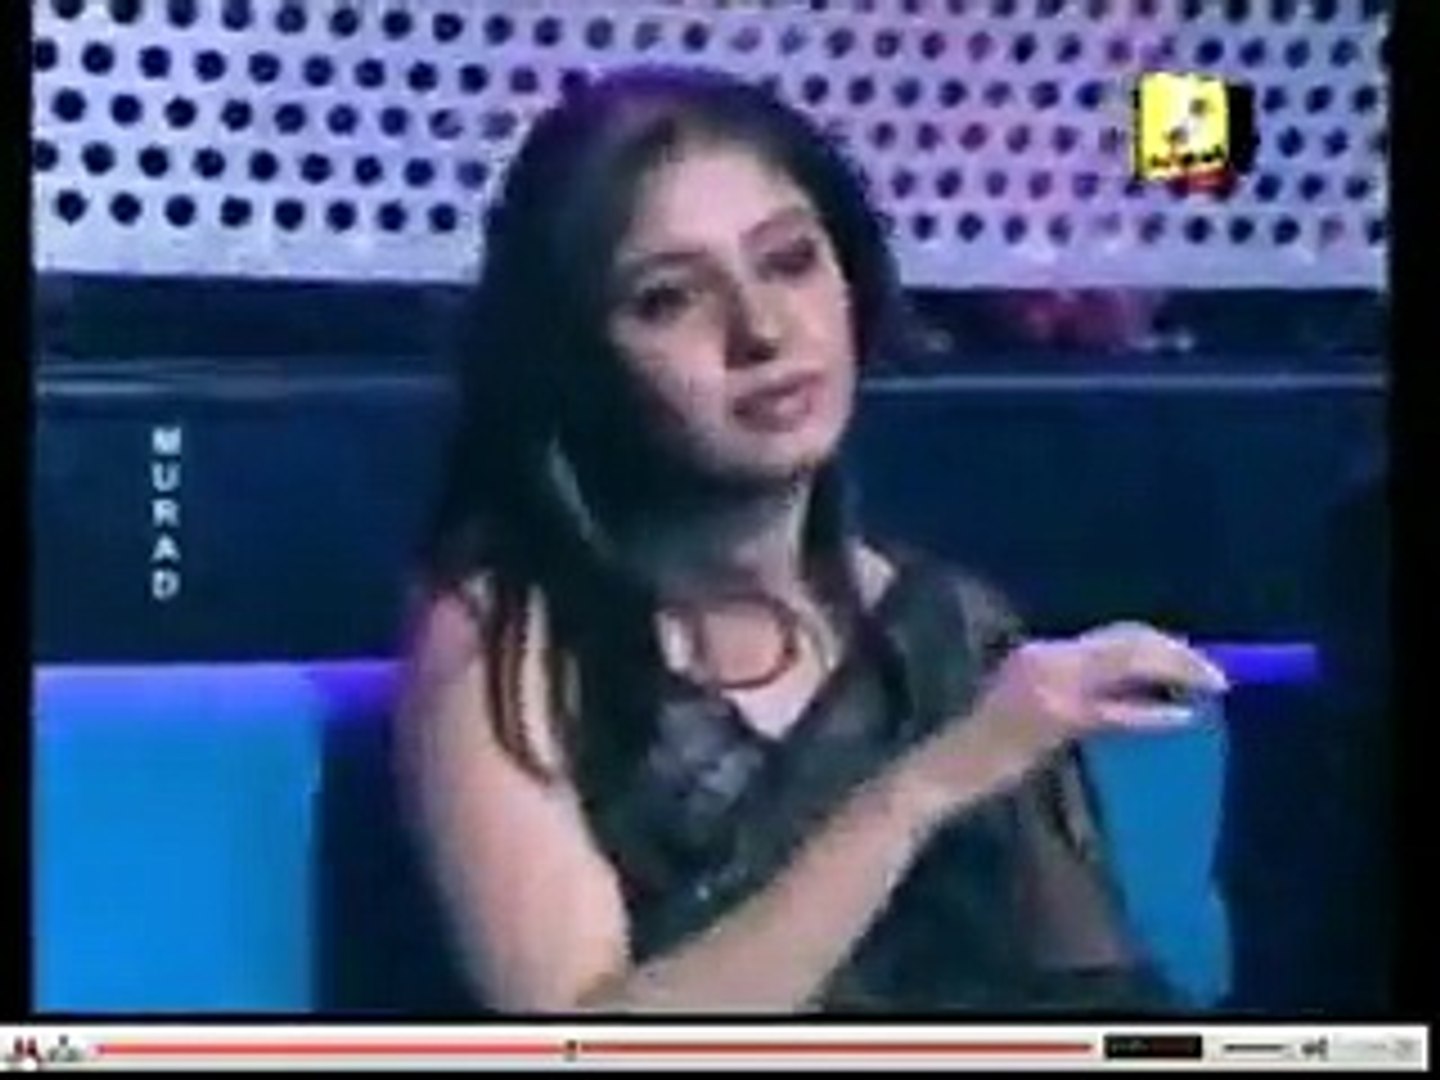 1440px x 1080px - Jaadu Hai Nasha Hai - Shriya Goshal Live By Rana Riasat Ali - video  Dailymotion